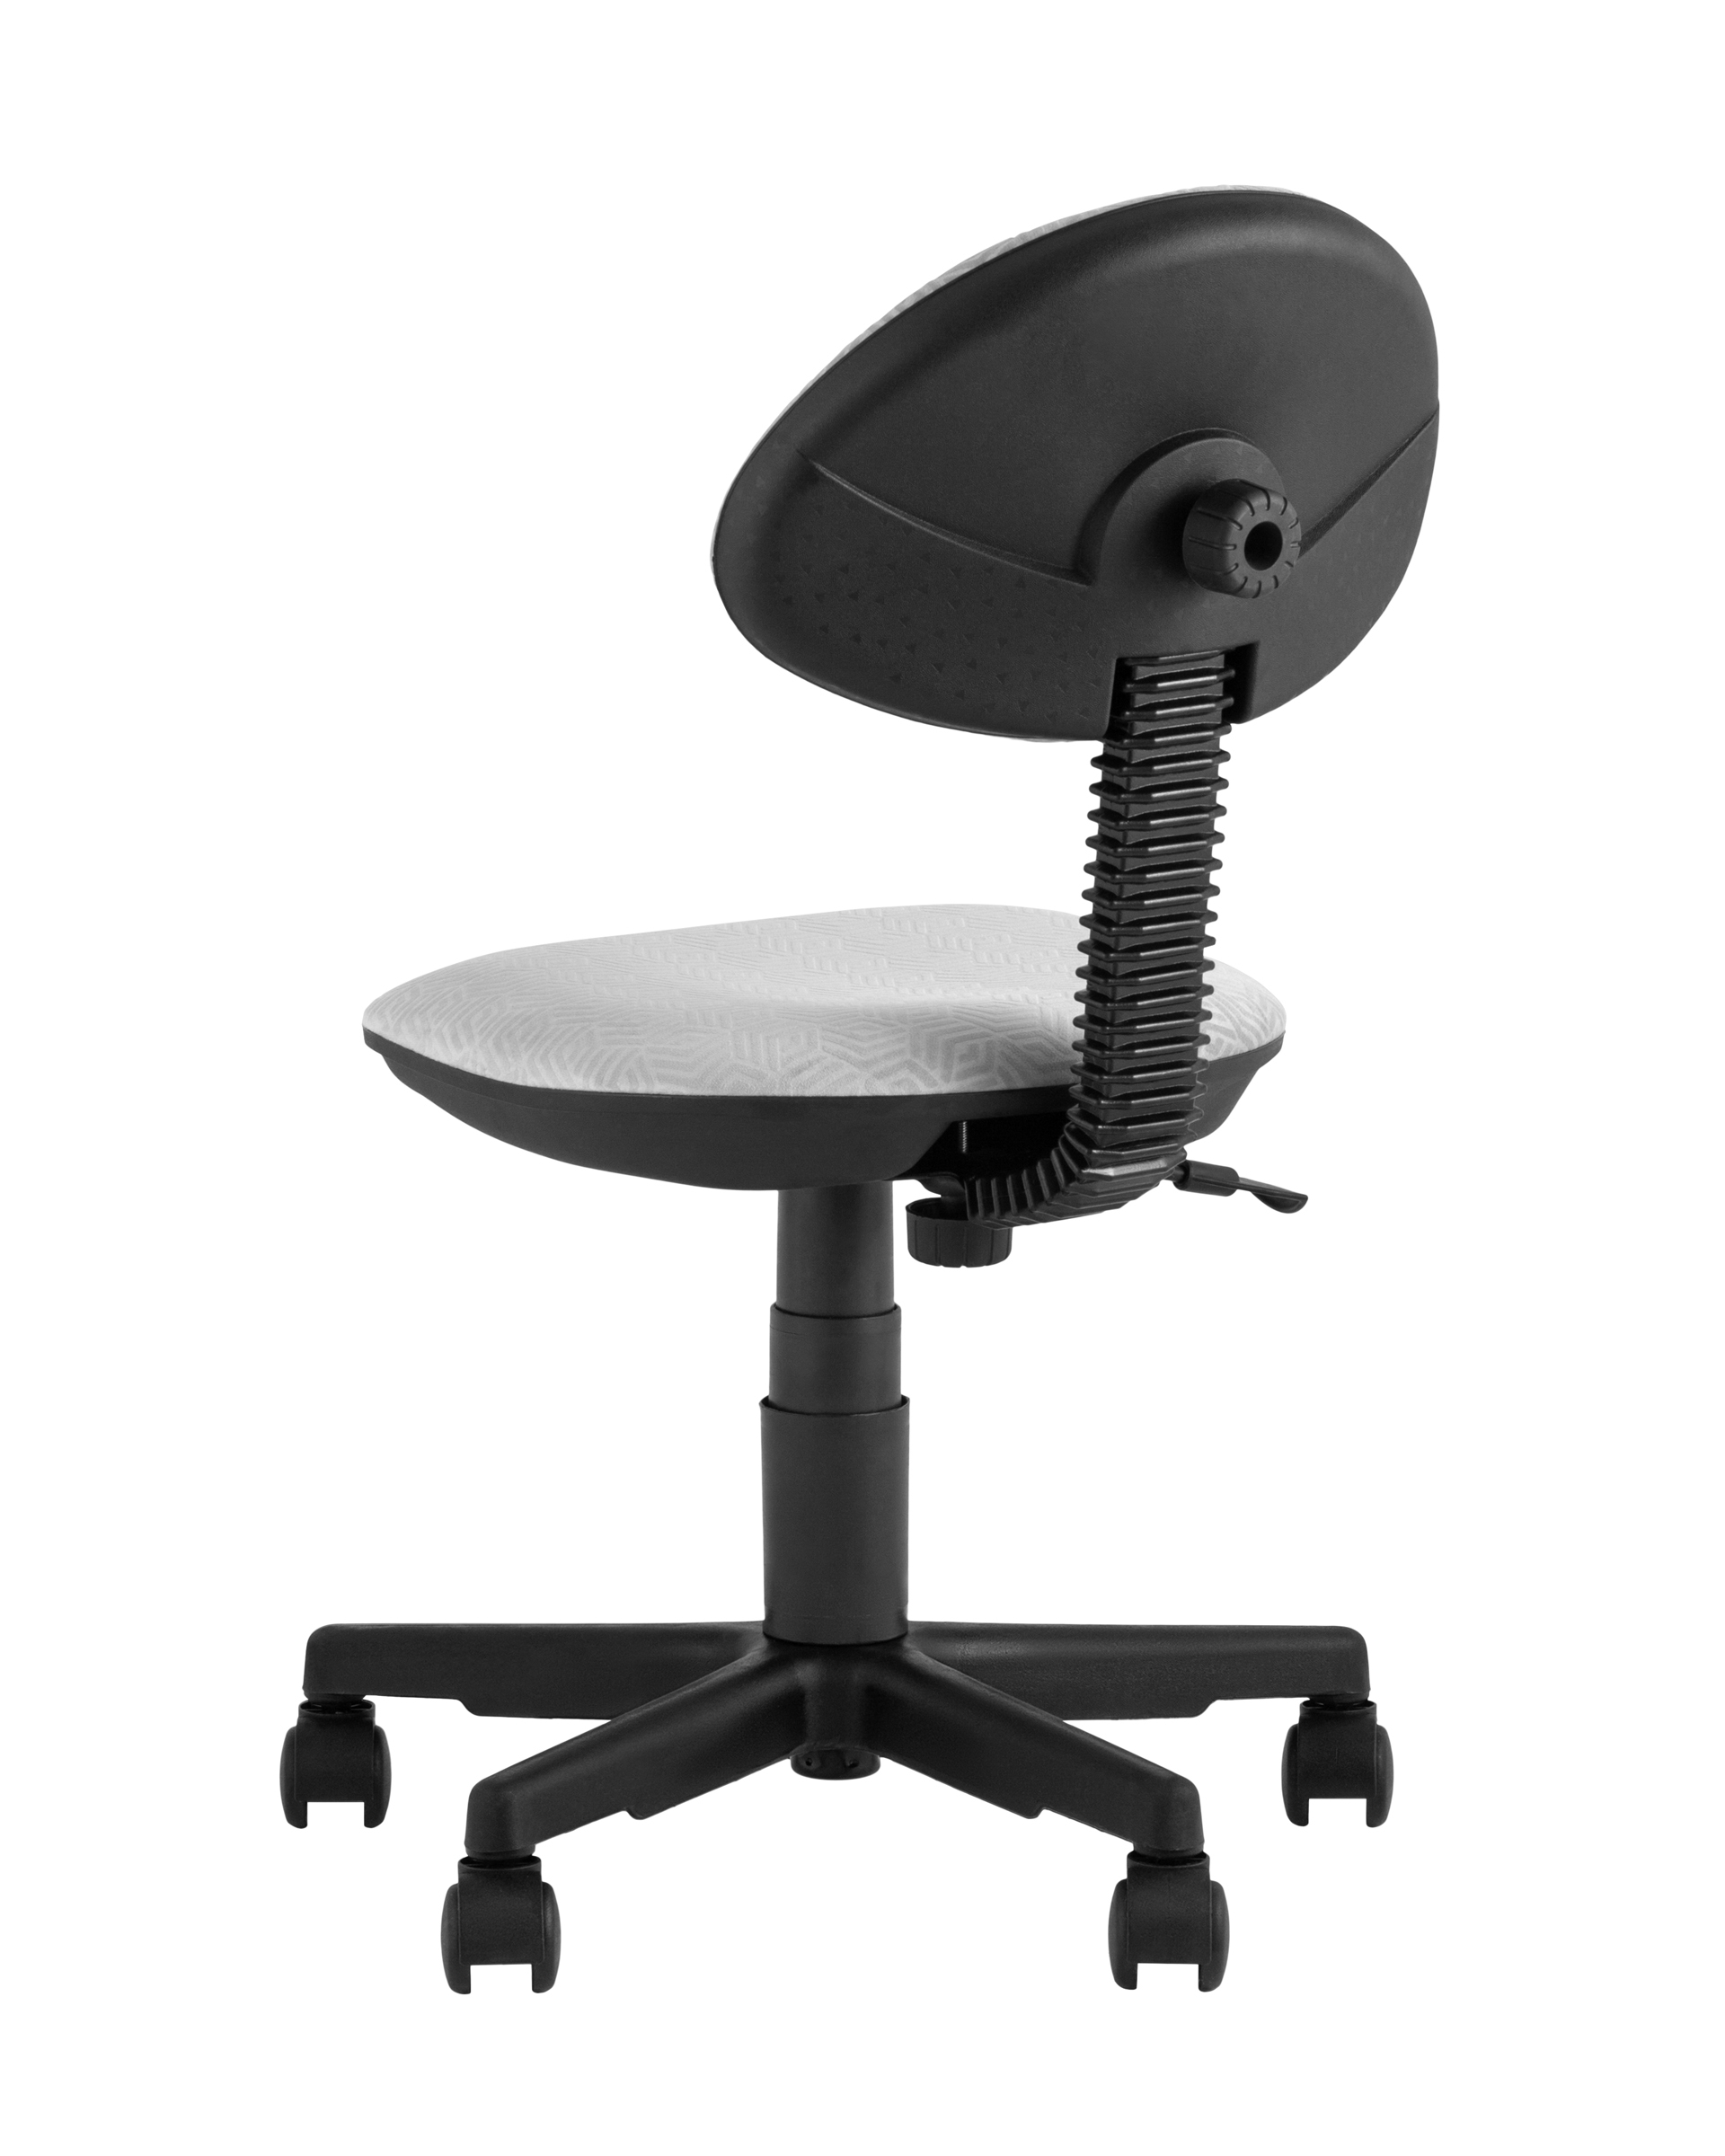 Детское компьютерное кресло Stool Group умка геометрия серый Paradigma 900 - фото 7